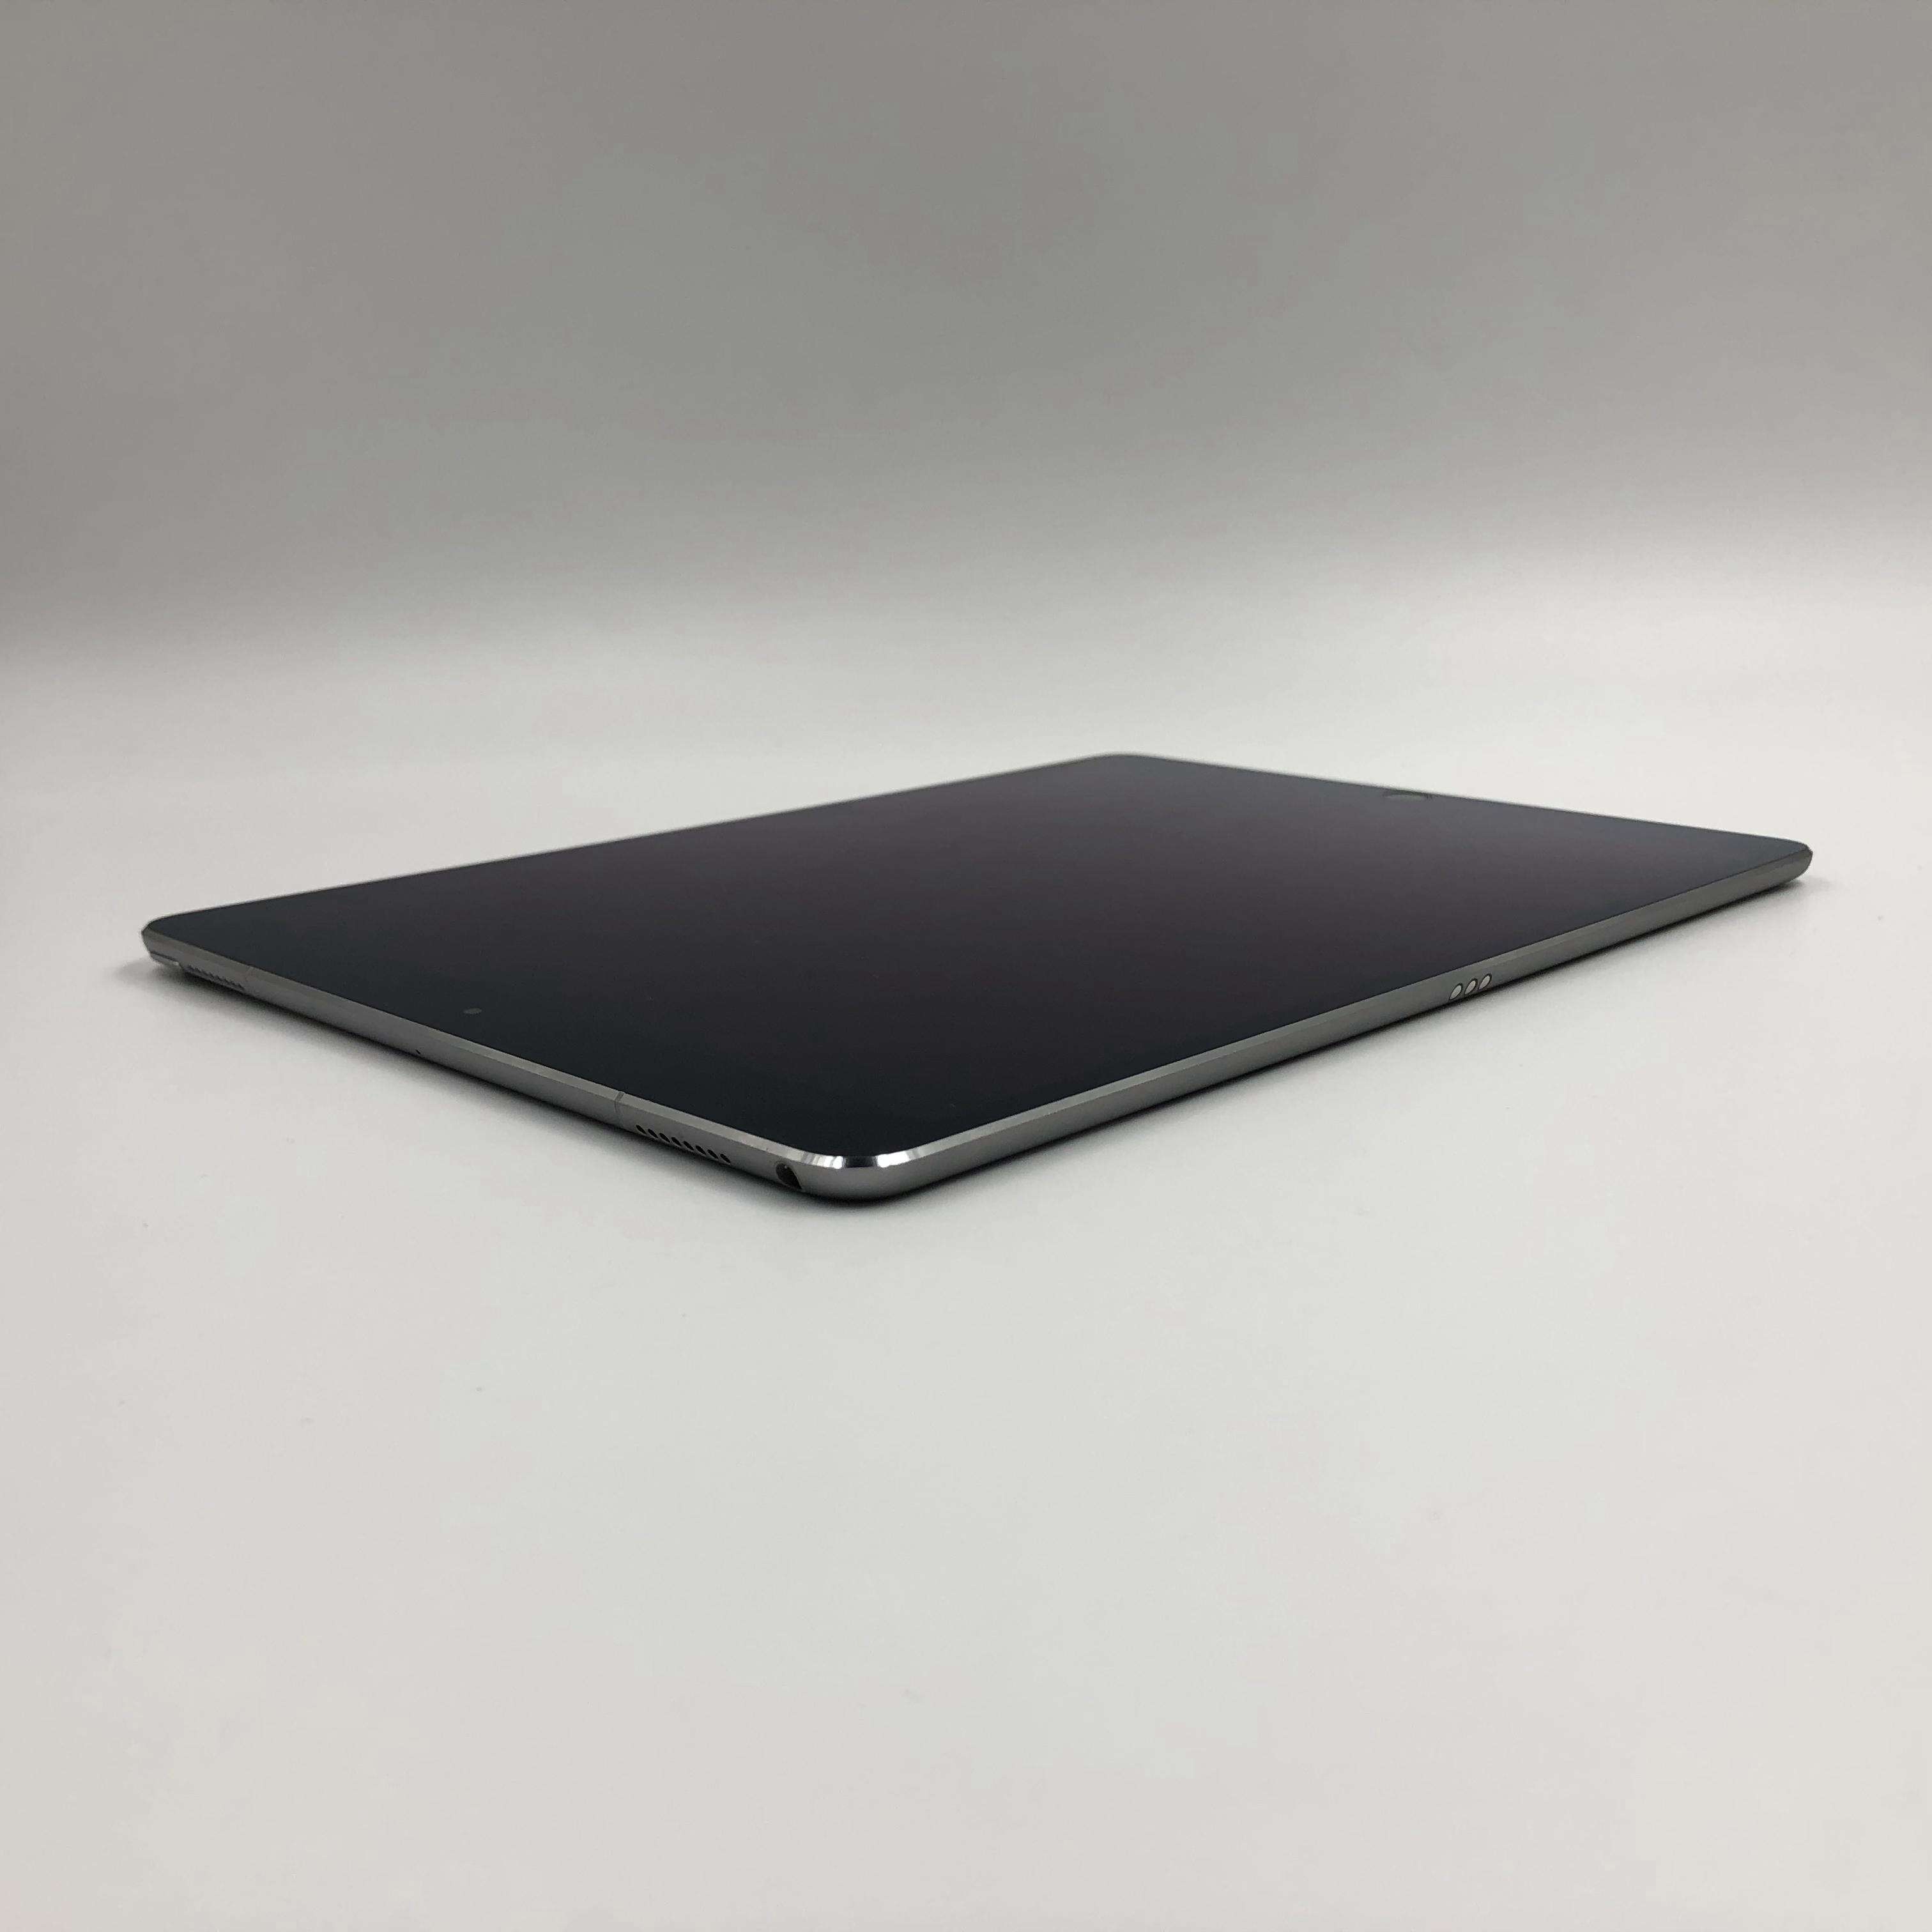 iPad Pro 10.5英寸(2017) 256G 港行Cellular版